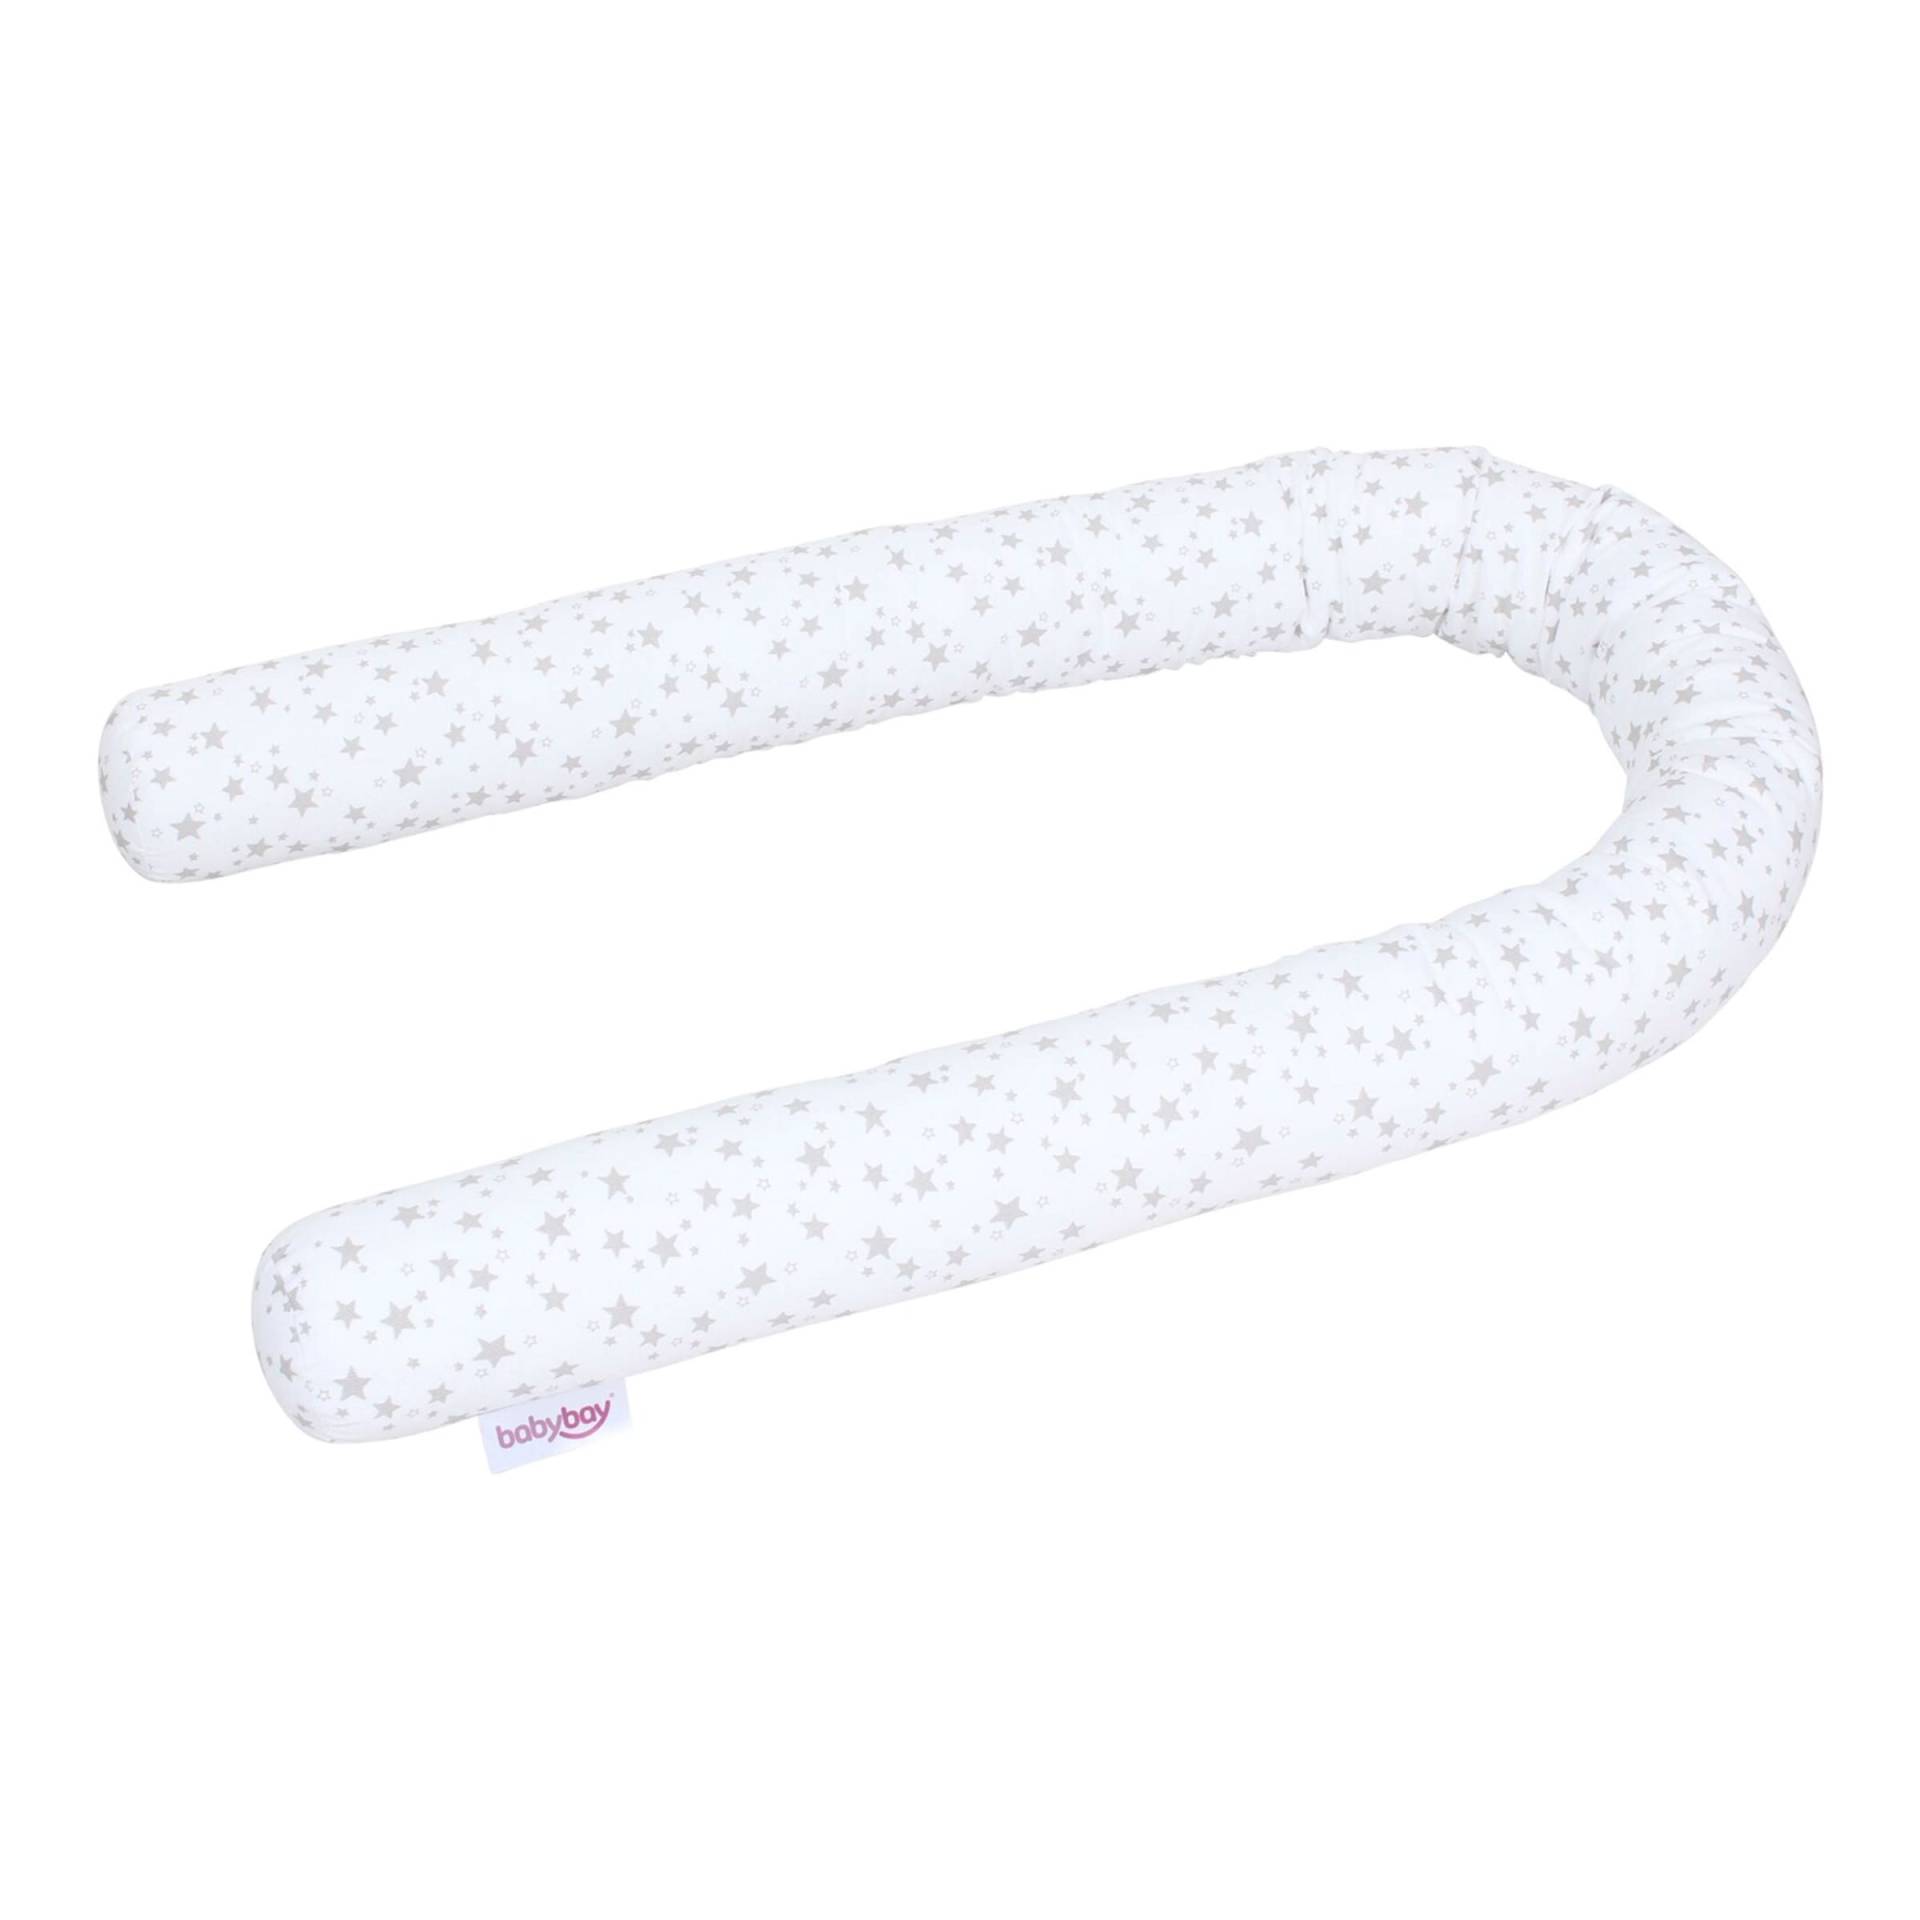 Nestchenschlange Piqué für alle Modelle von babybay